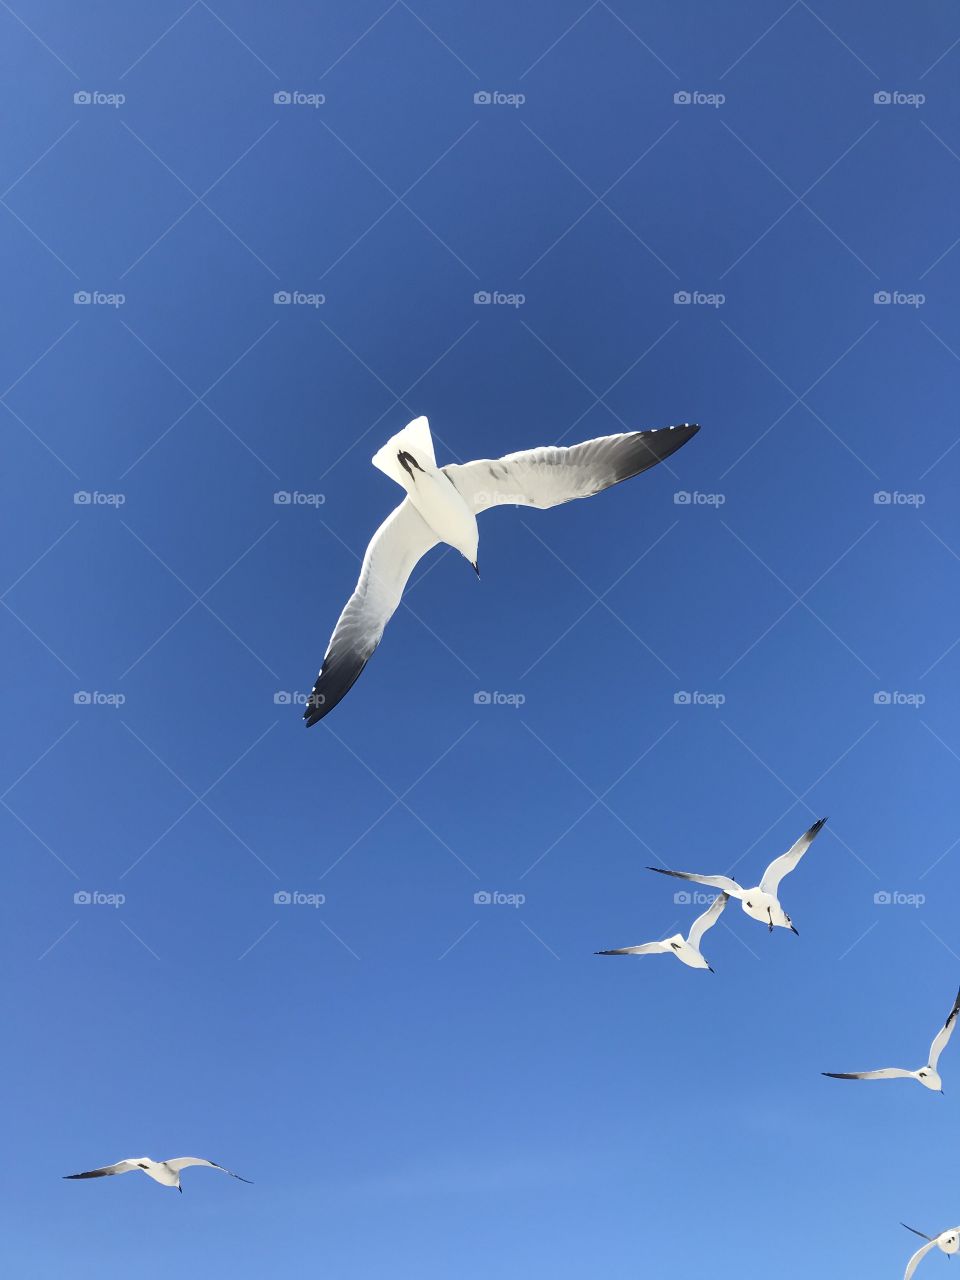 Seagulls, Flight, Bird, Sky, Air